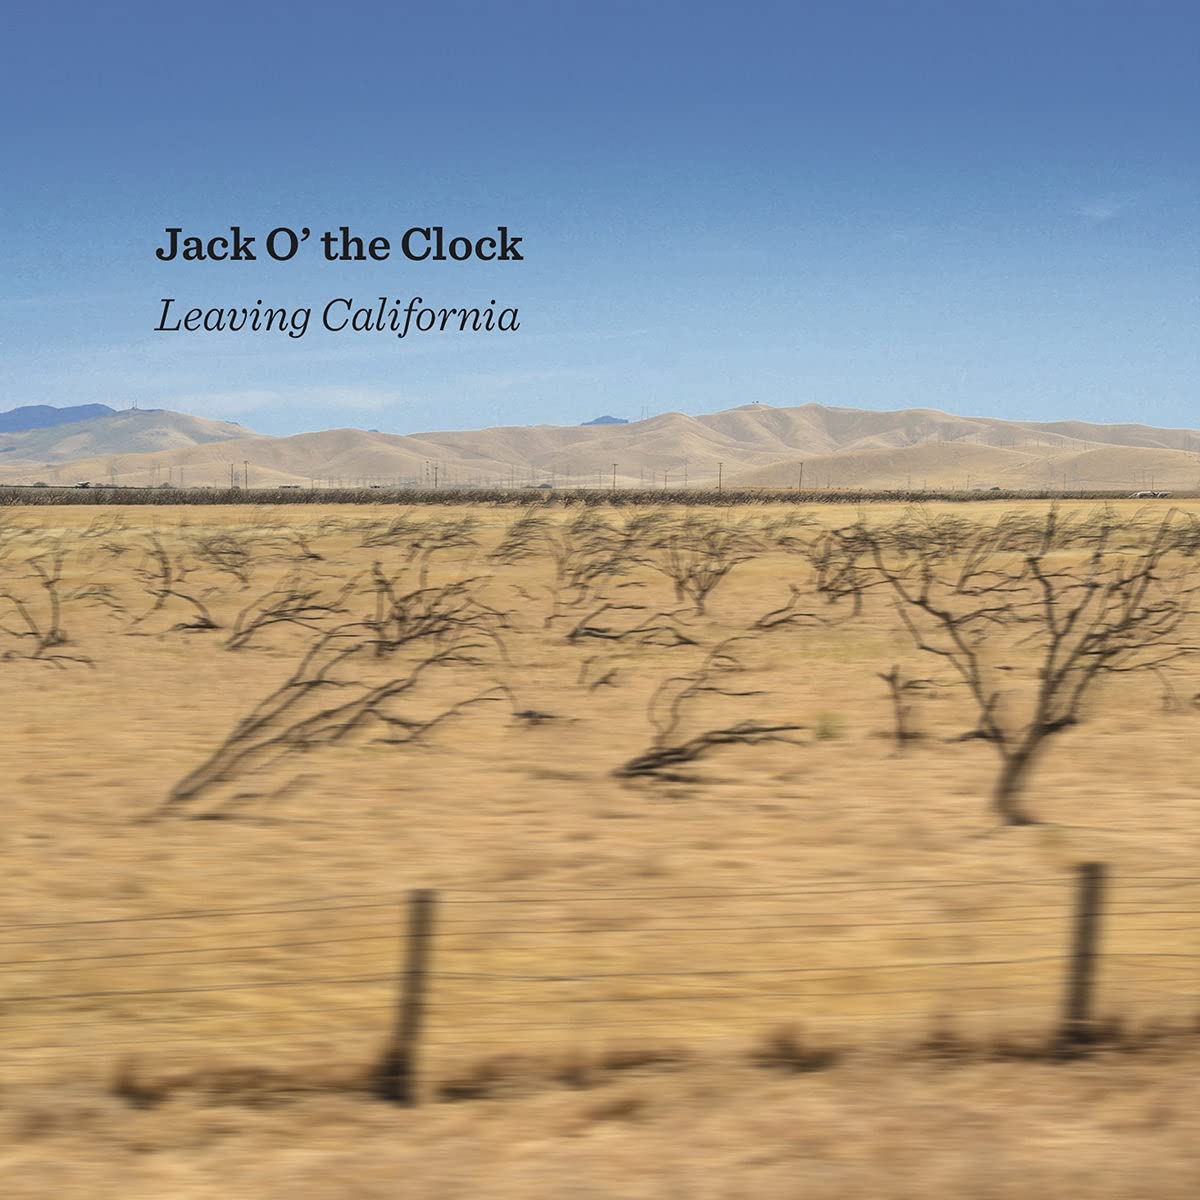 Jack O’ the Clock: Leaving California